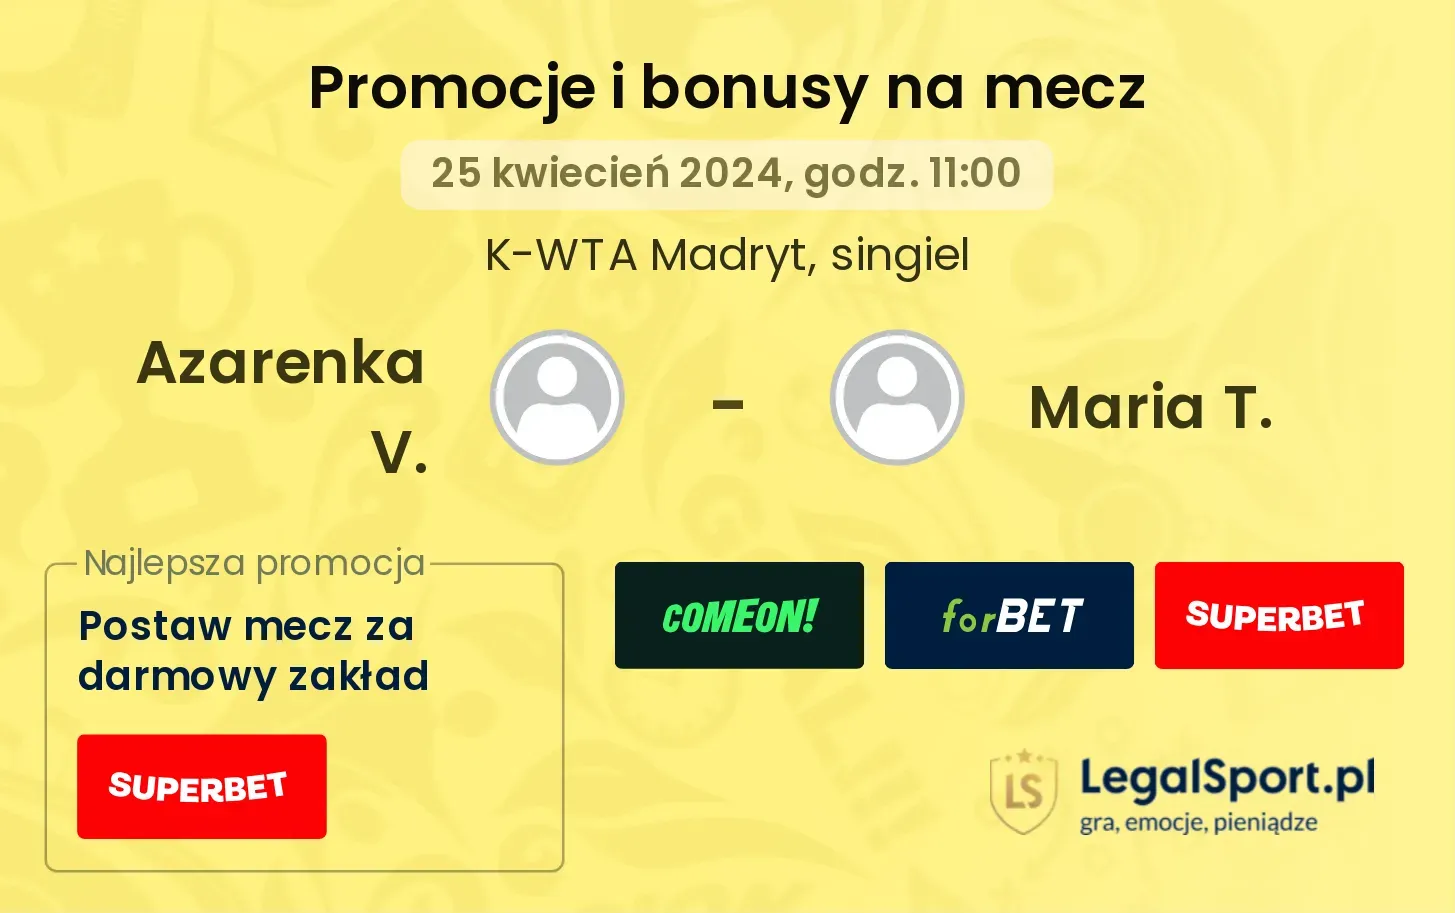 Azarenka V. - Maria T. promocje bonusy na mecz